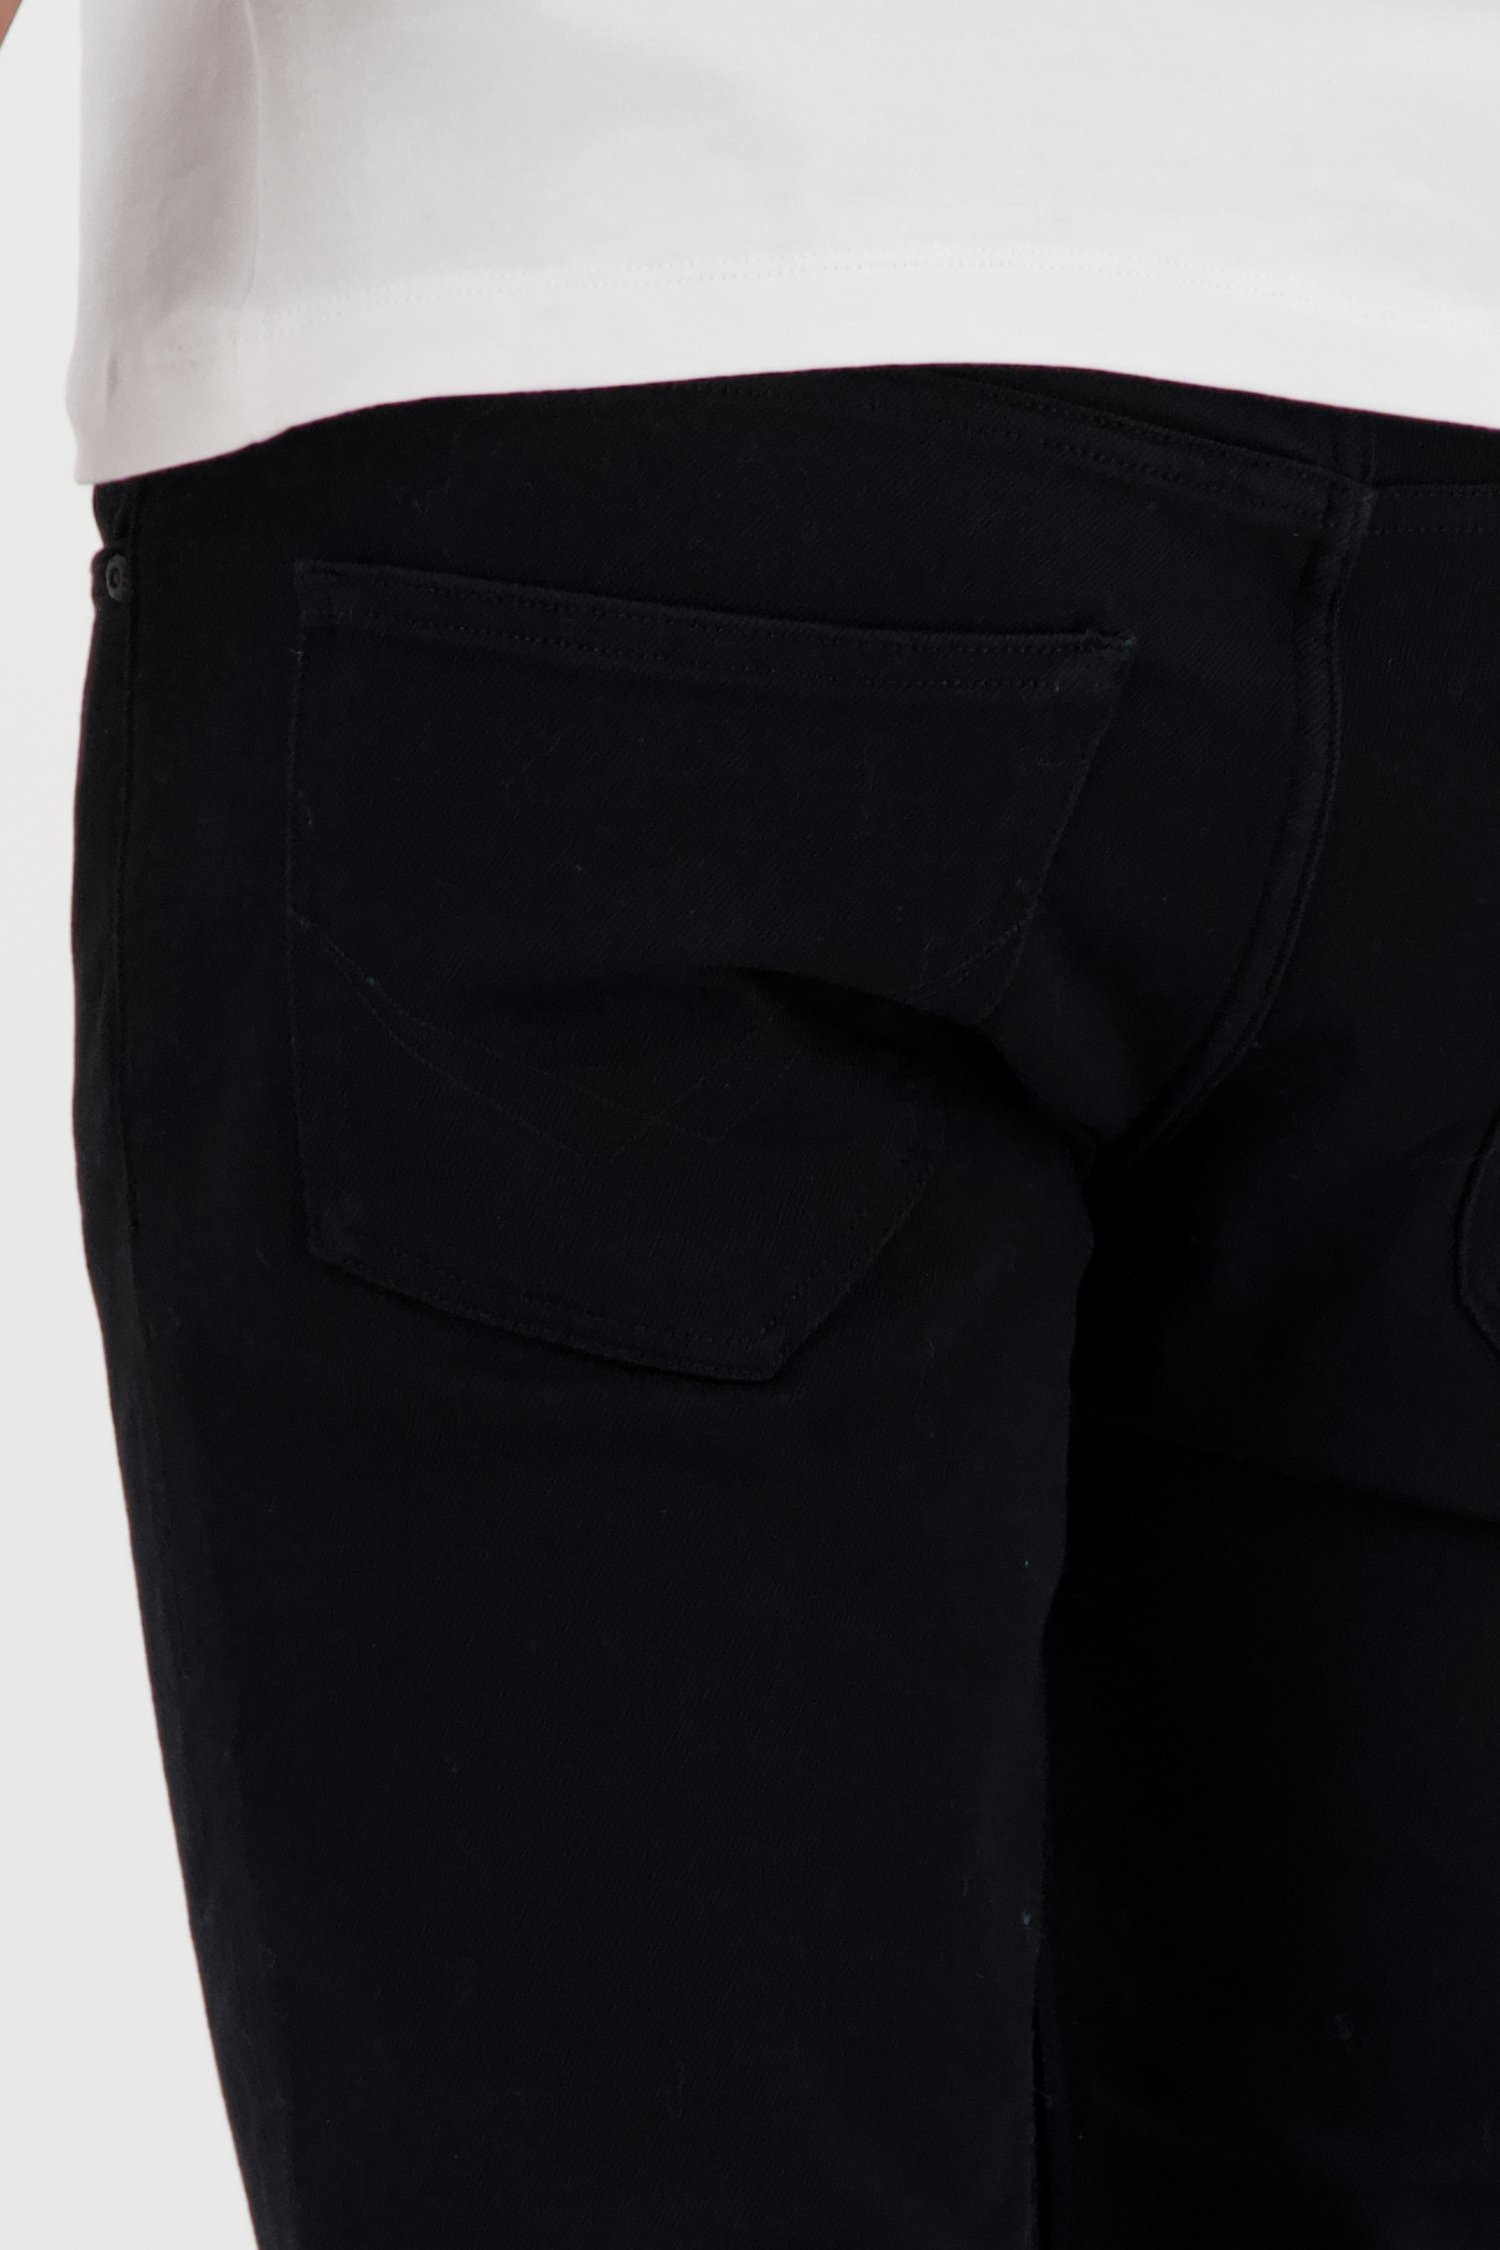 Zwarte jeans - Lars - slim fit - L34 van Liberty Island Denim voor Heren